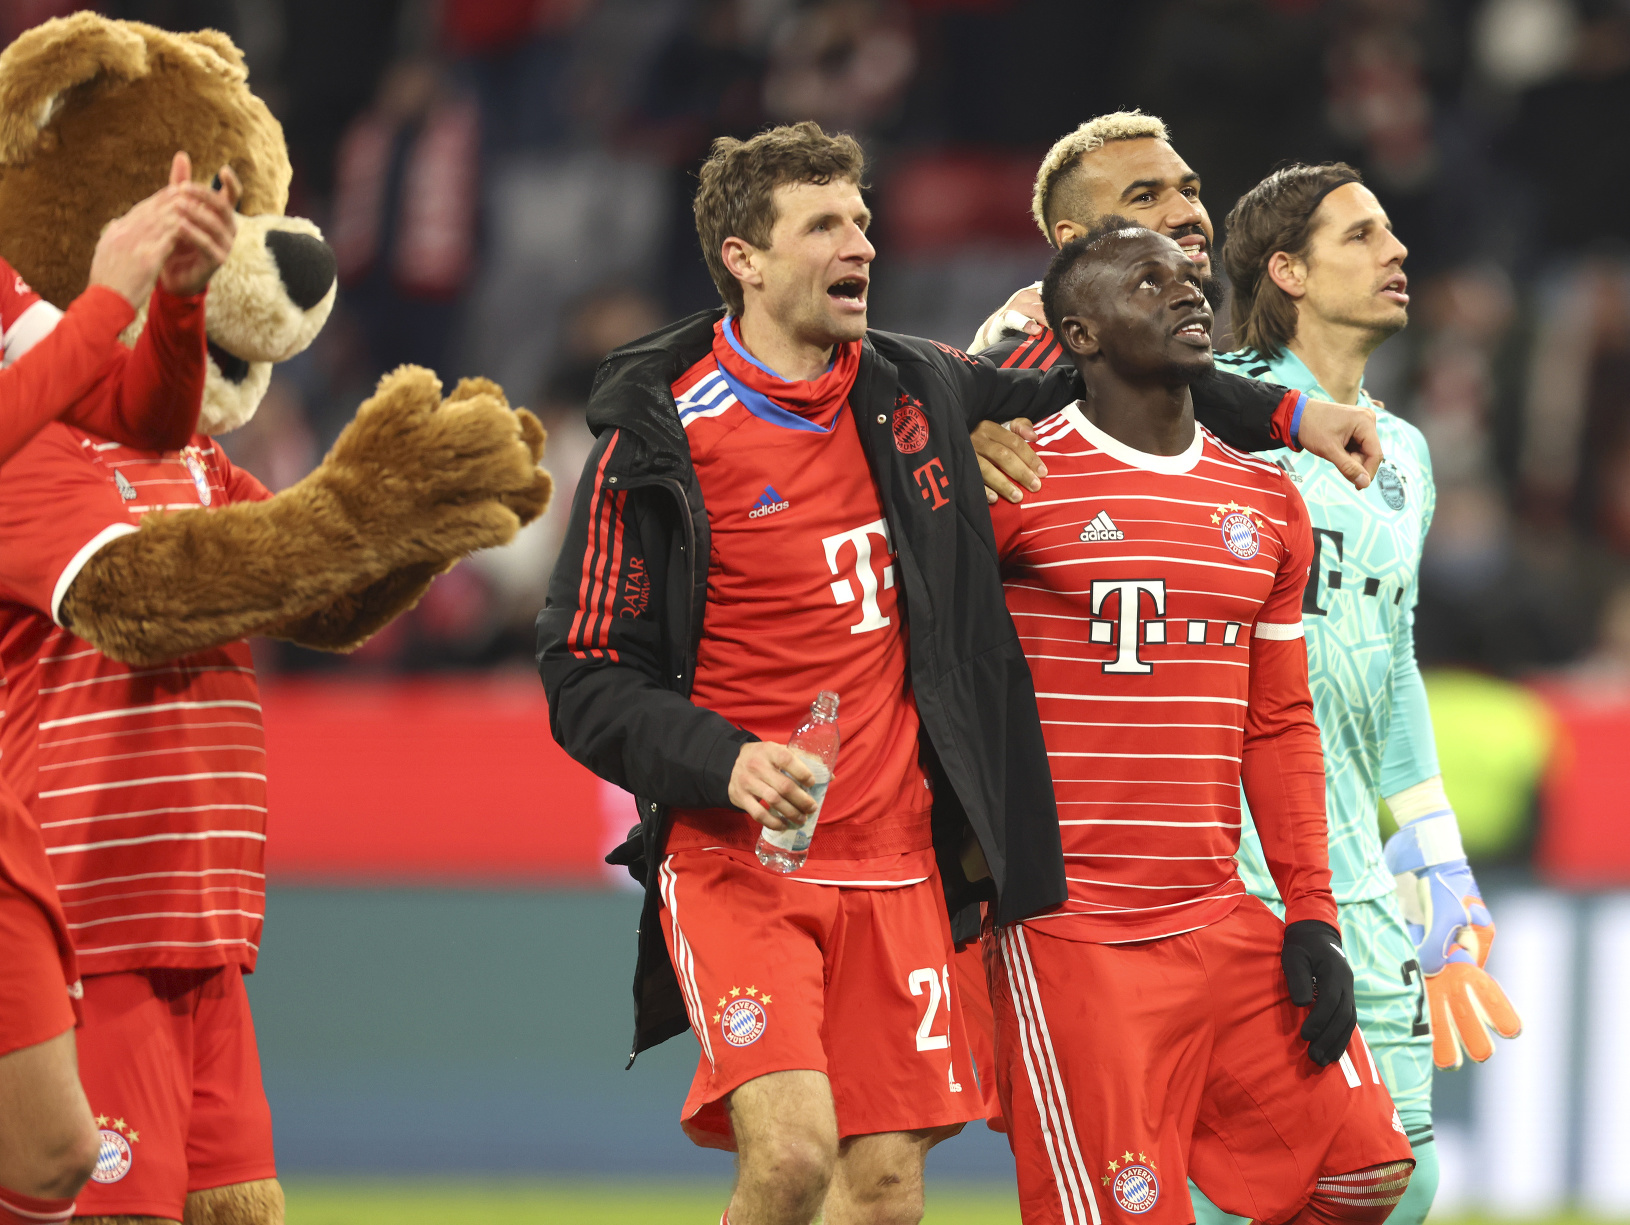 Ďakovačka hráčov Bayernu po